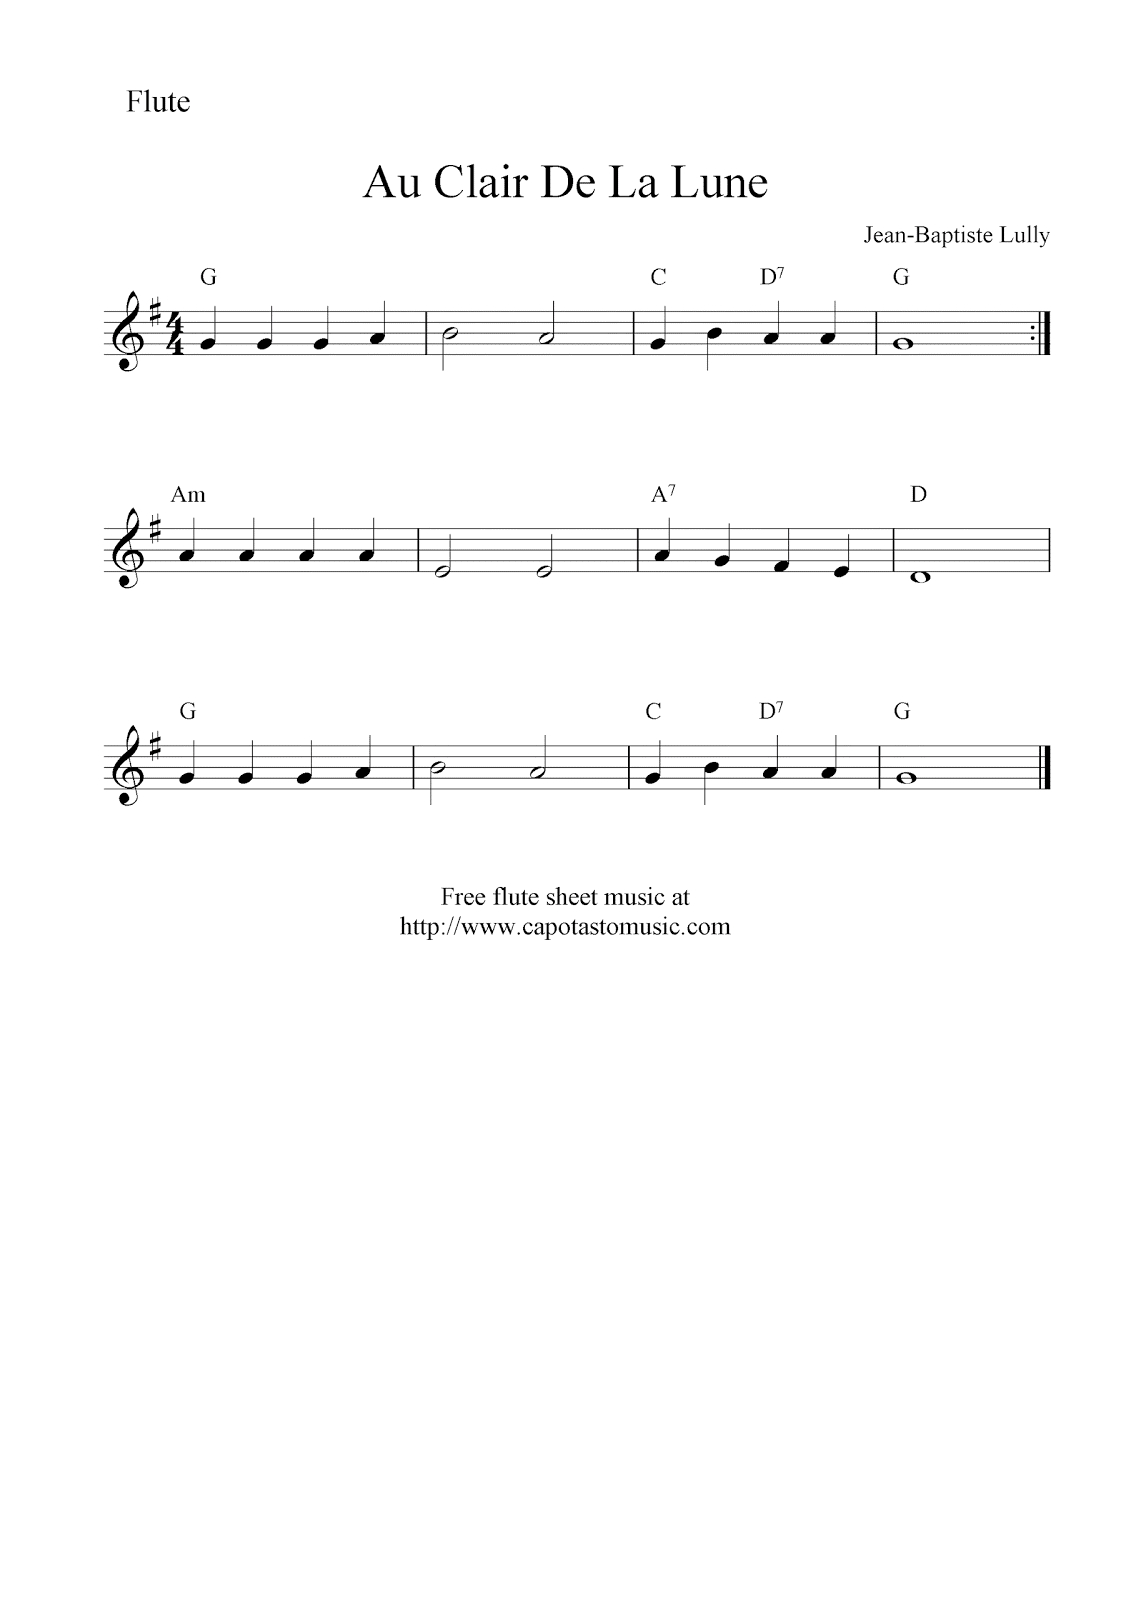 Au Clair De La Lune, Free Flute Sheet Music Notes - Free Printable Flute Music